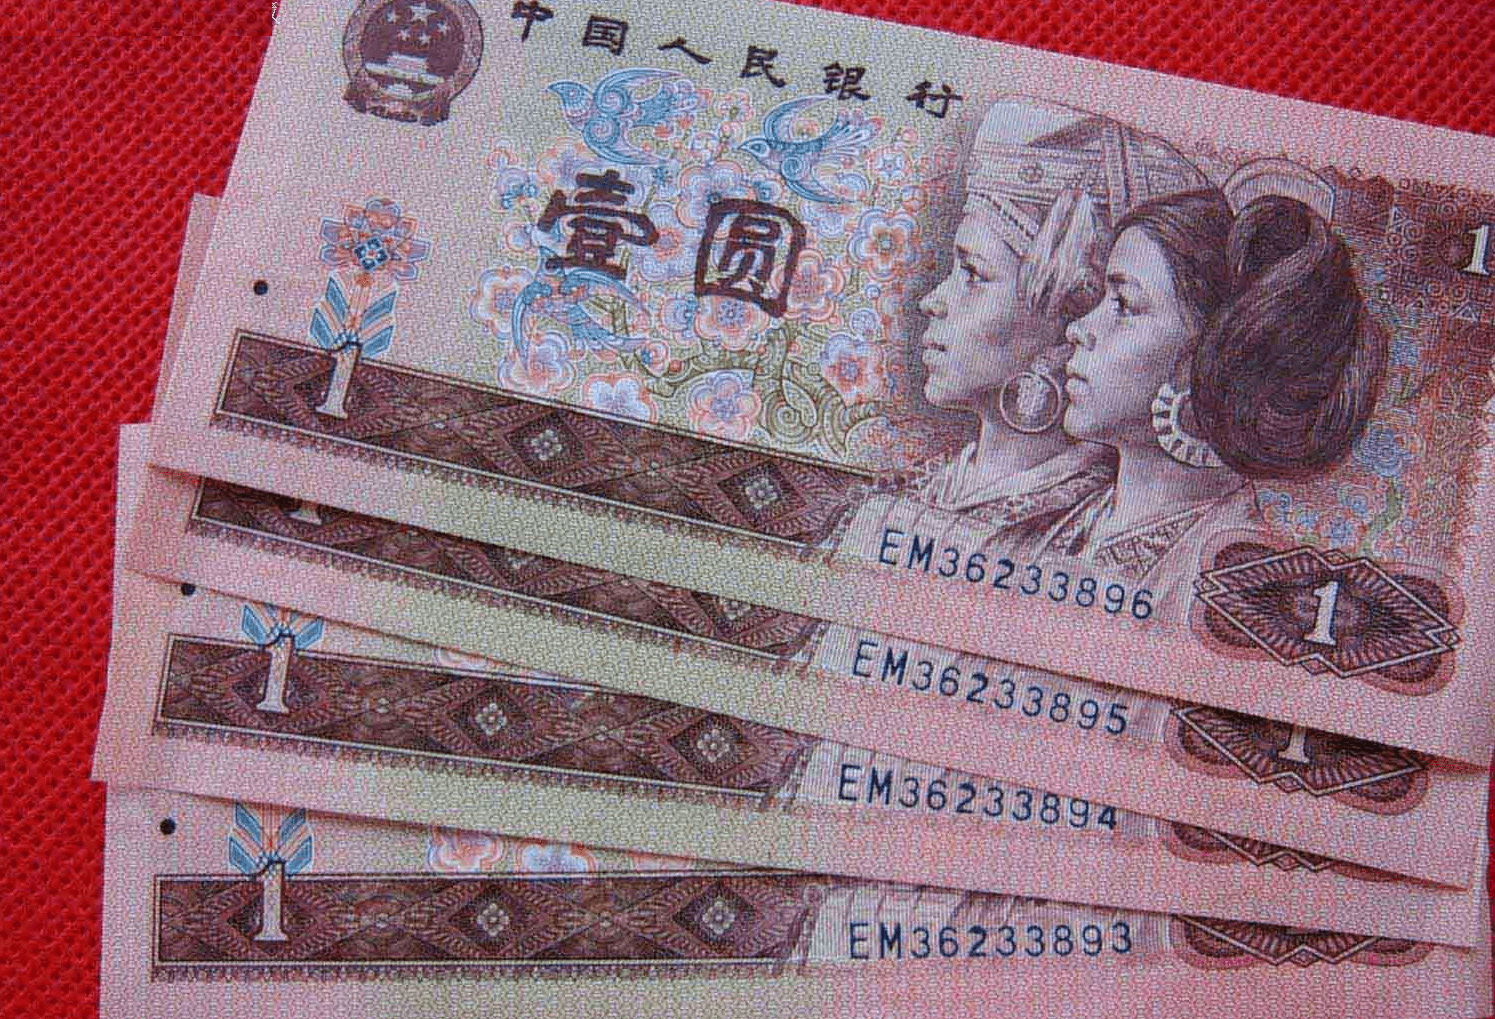 如上图的这种红色一元钱纸币,是属于我国的第四套人民币,它的面值为1